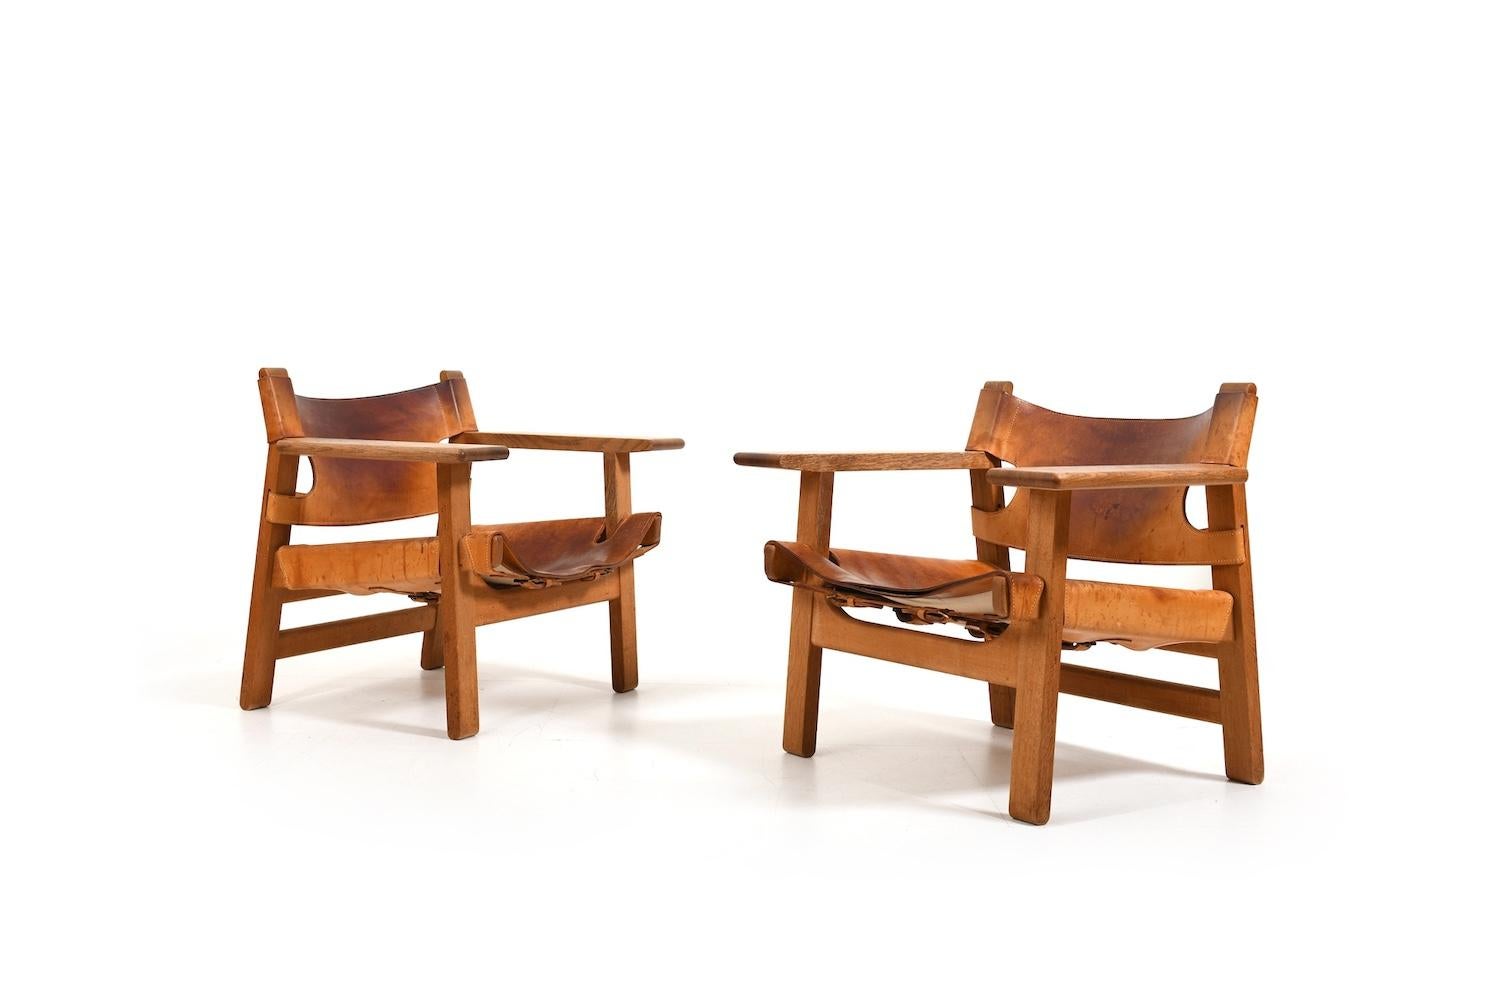 Magnifique paire de chaises espagnoles de Børge Mogensen. Conçu en 1958 pour Fredericia Stolefabrik Danemark. Modèle BM2226. Ancienne édition. Fabriqué en chêne massif et en cuir naturel. Produit au début des années 1960. Nous avons décidé de ne